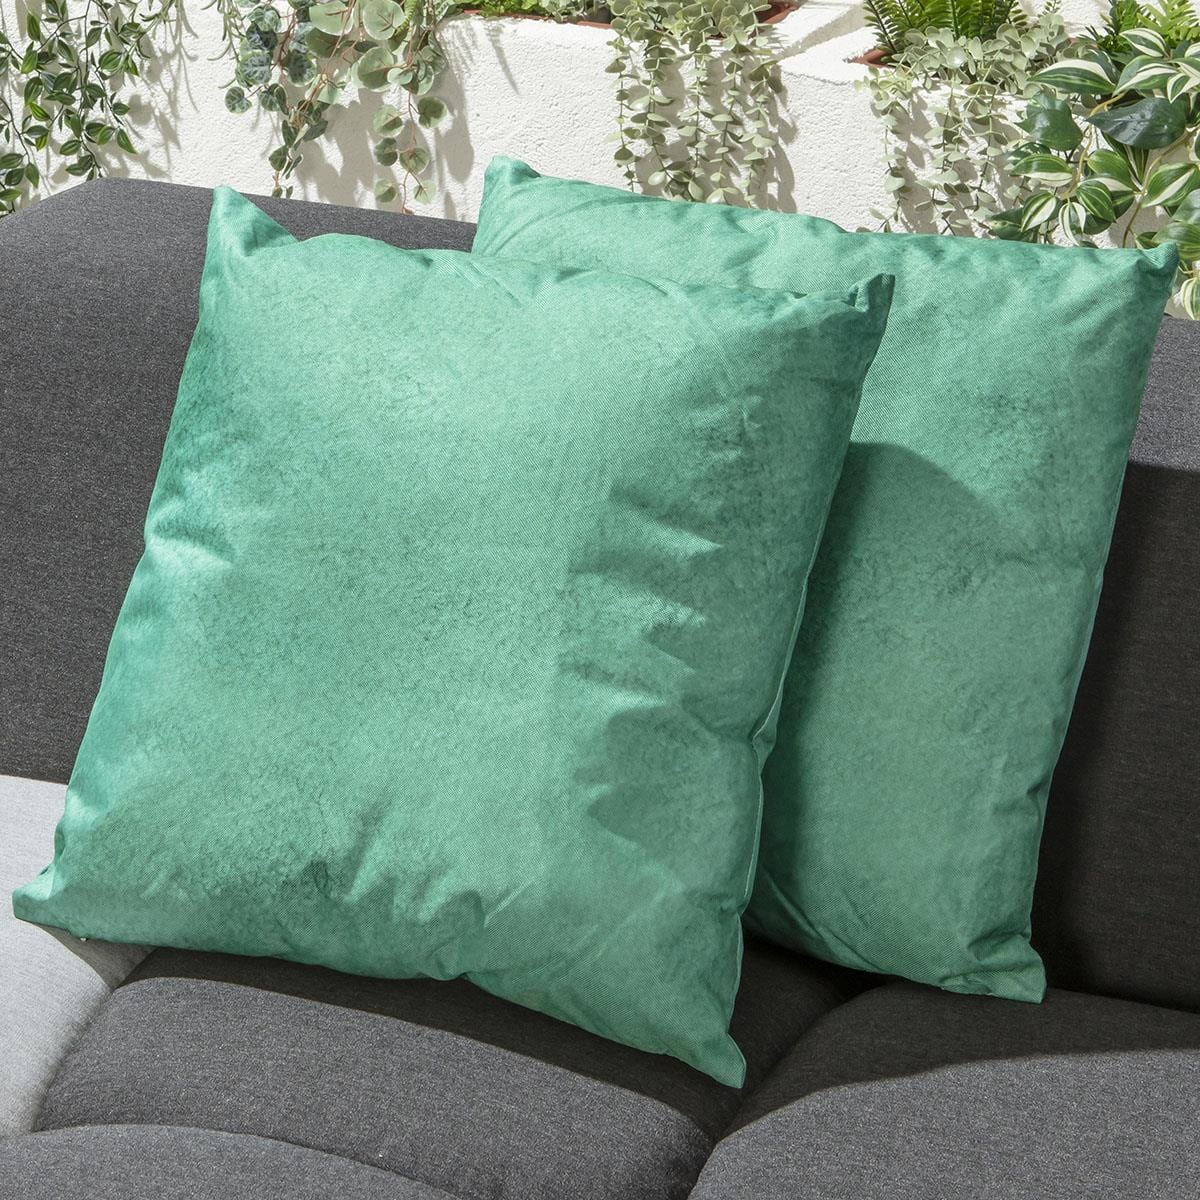 Quatropi 4 Green Wash Outdoor Cushions 45cm